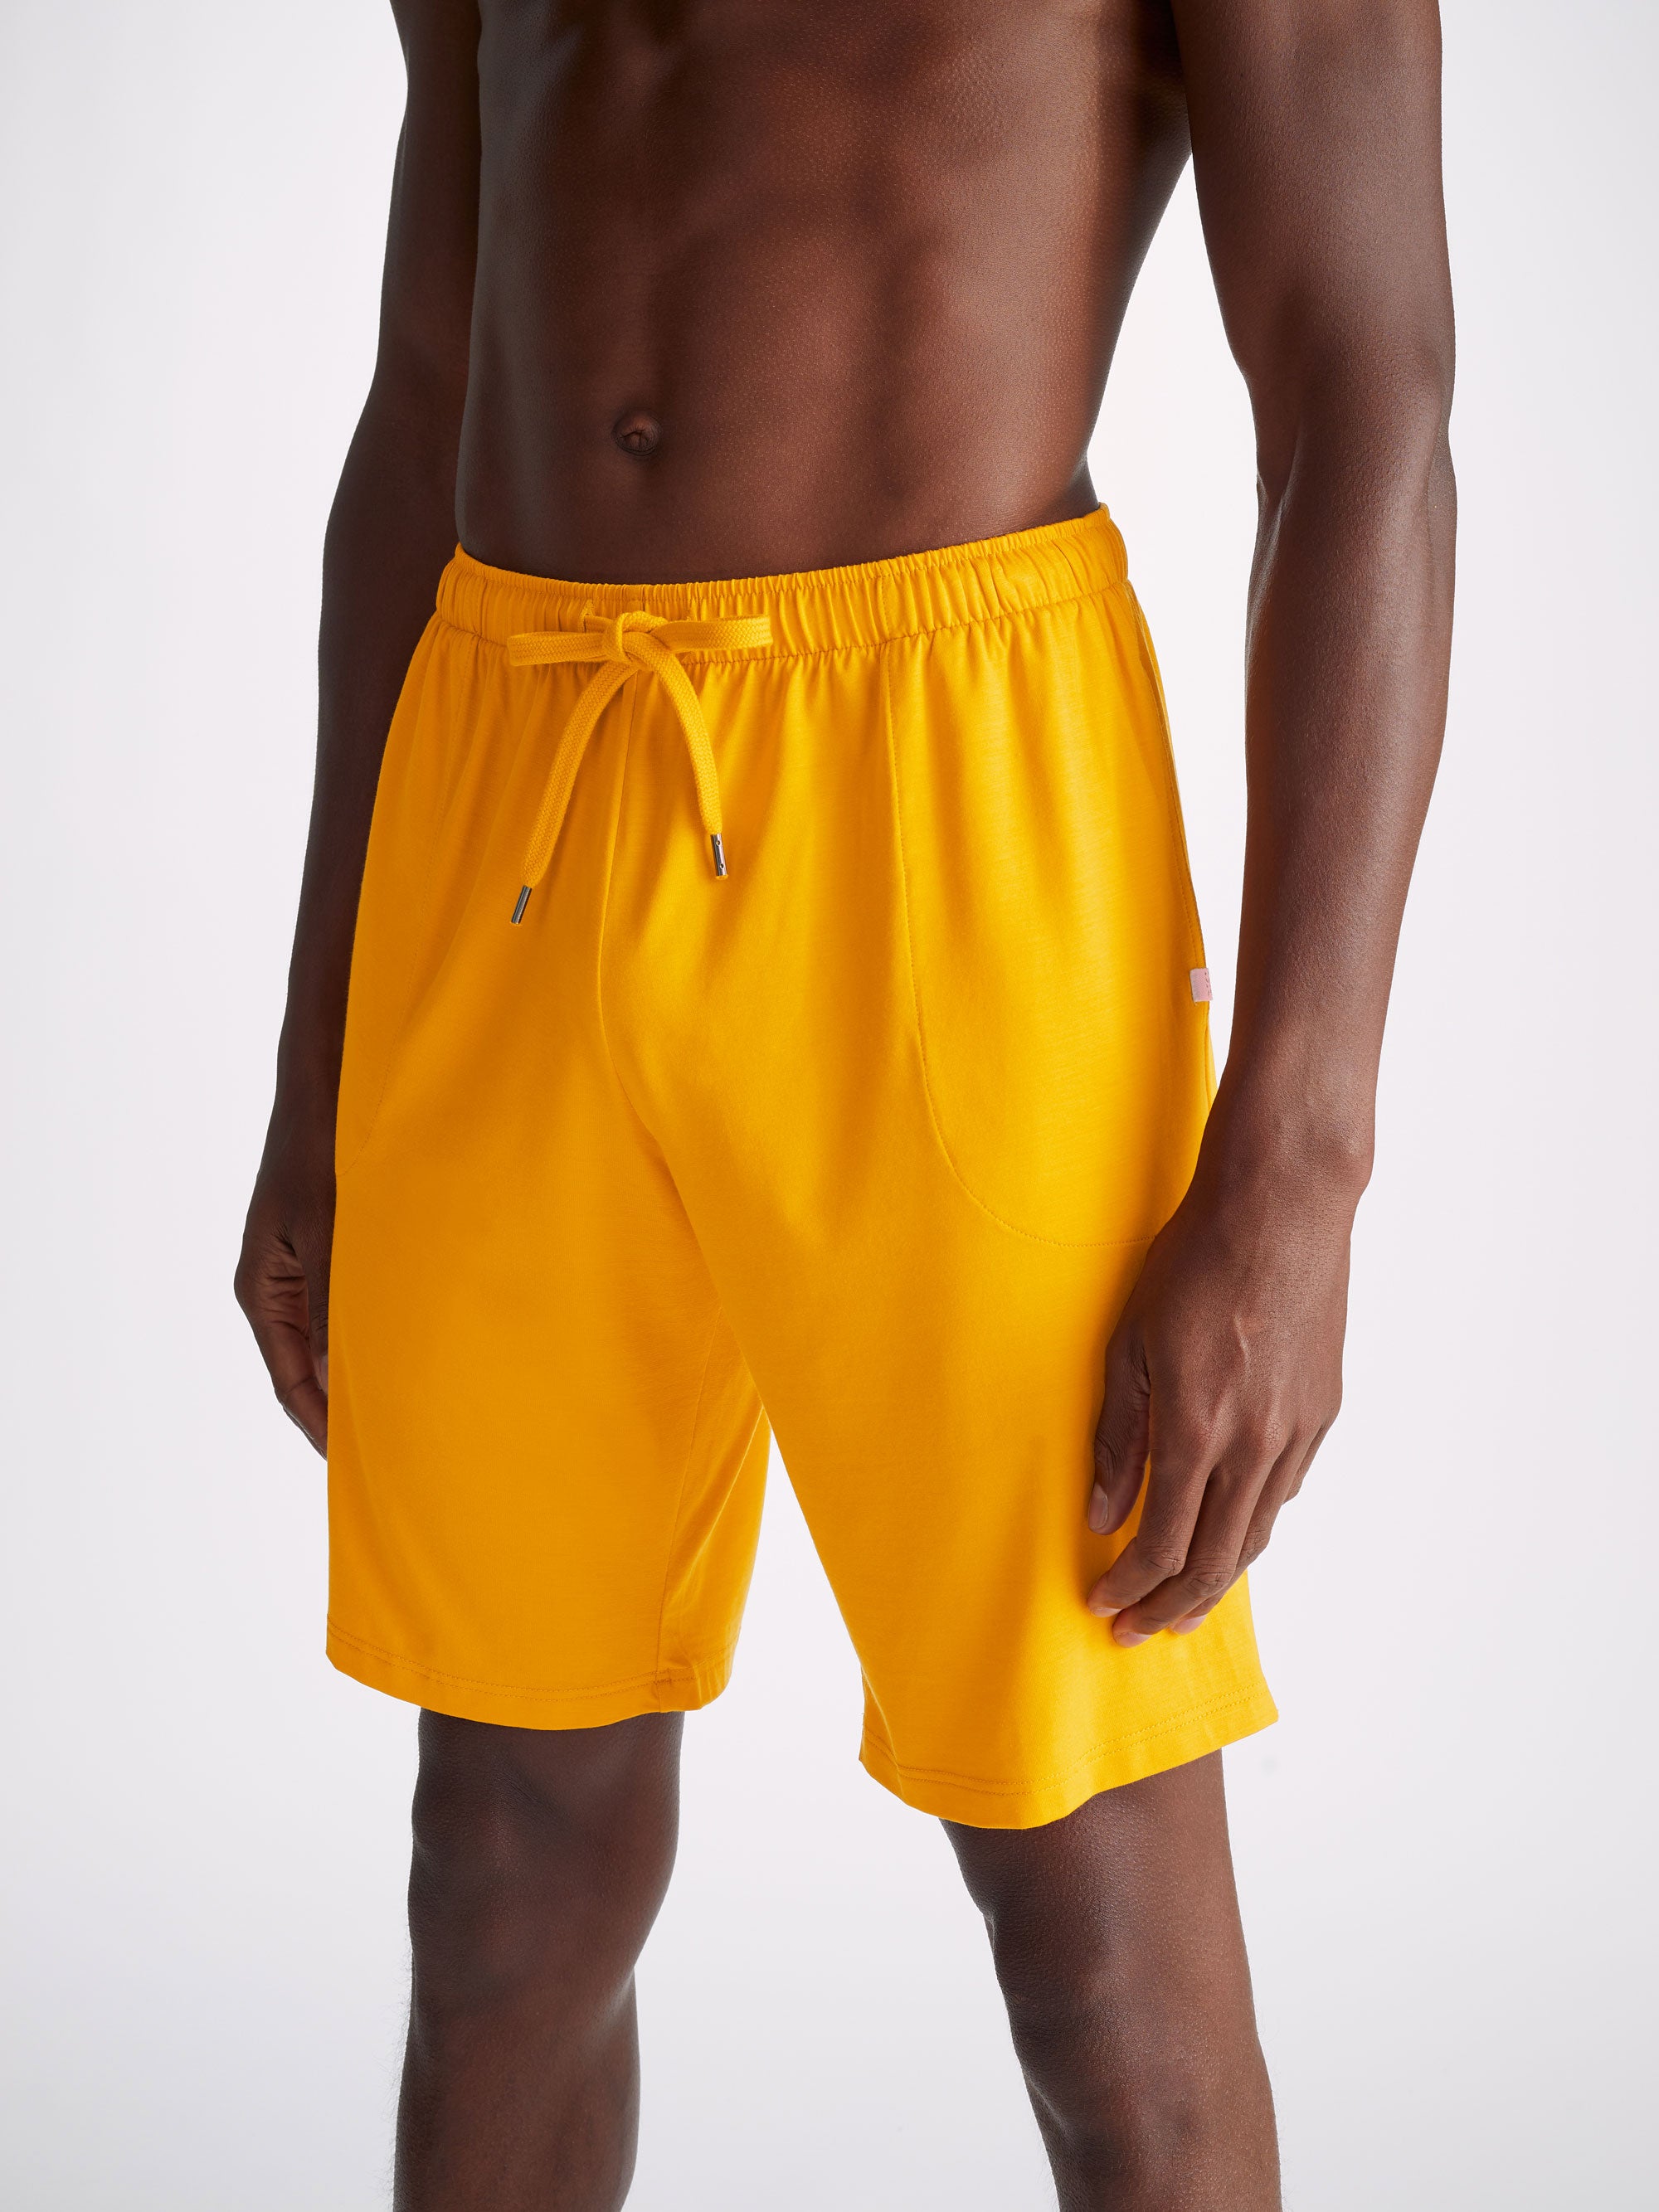 Men's Lounge Shorts Basel Micro Modal Stretch Saffron